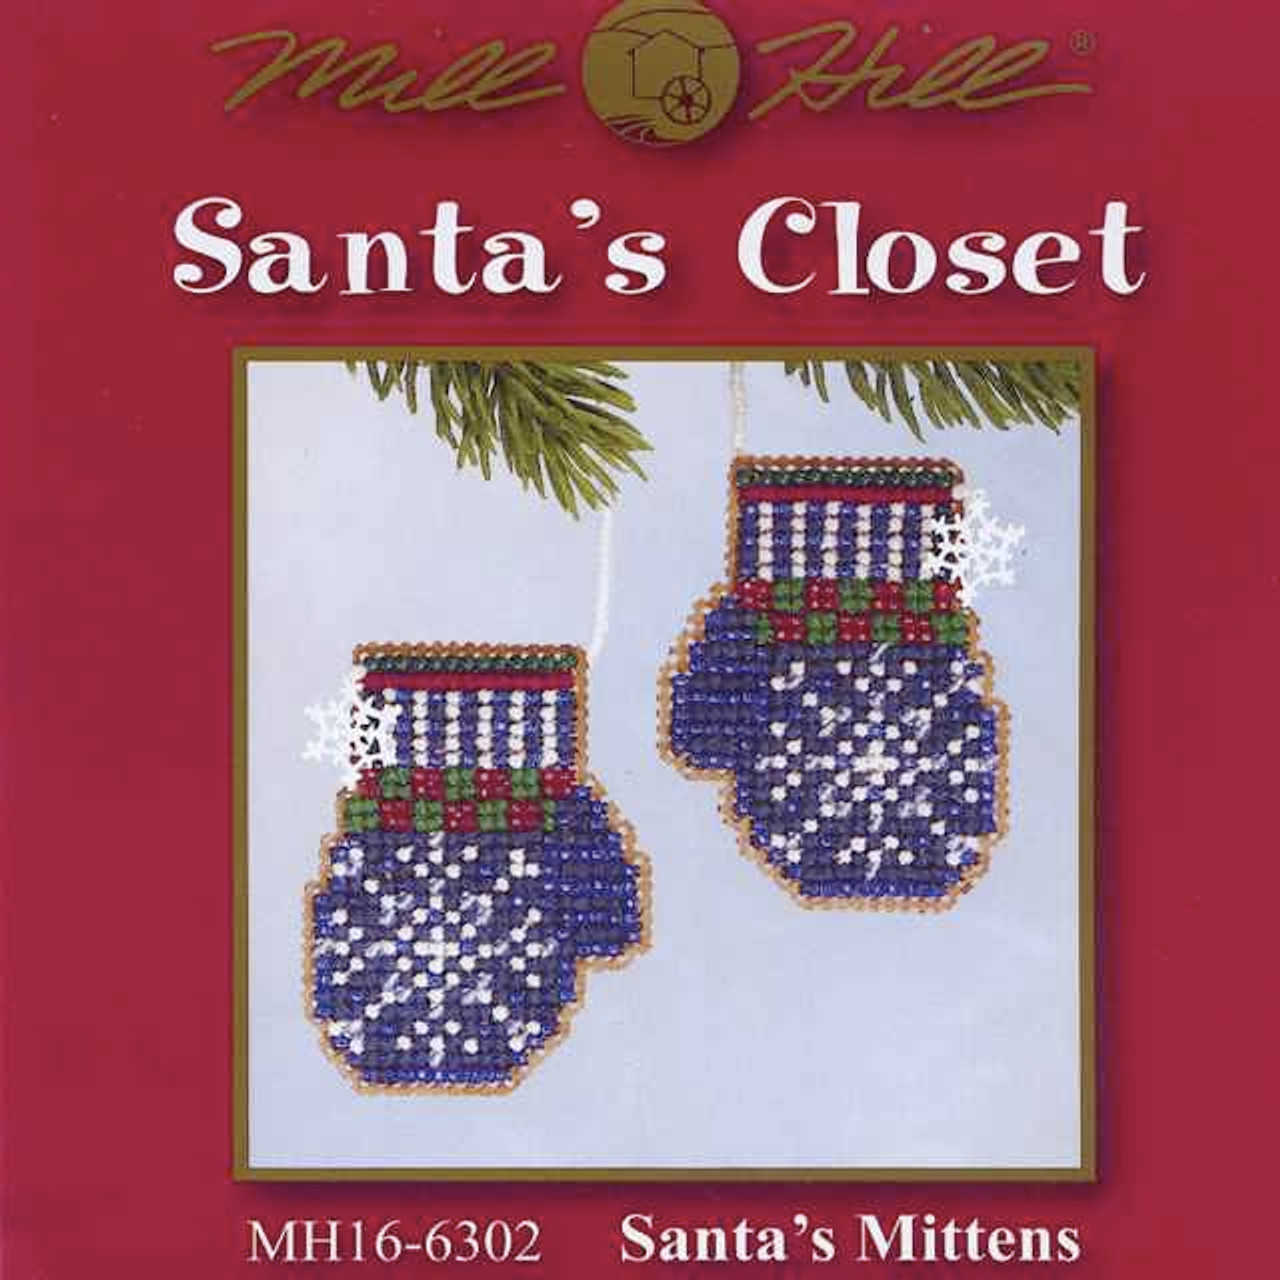 Santa's Mittens Beaded Cross Stitch Kit Mill Hill 2006 Santa's Closet